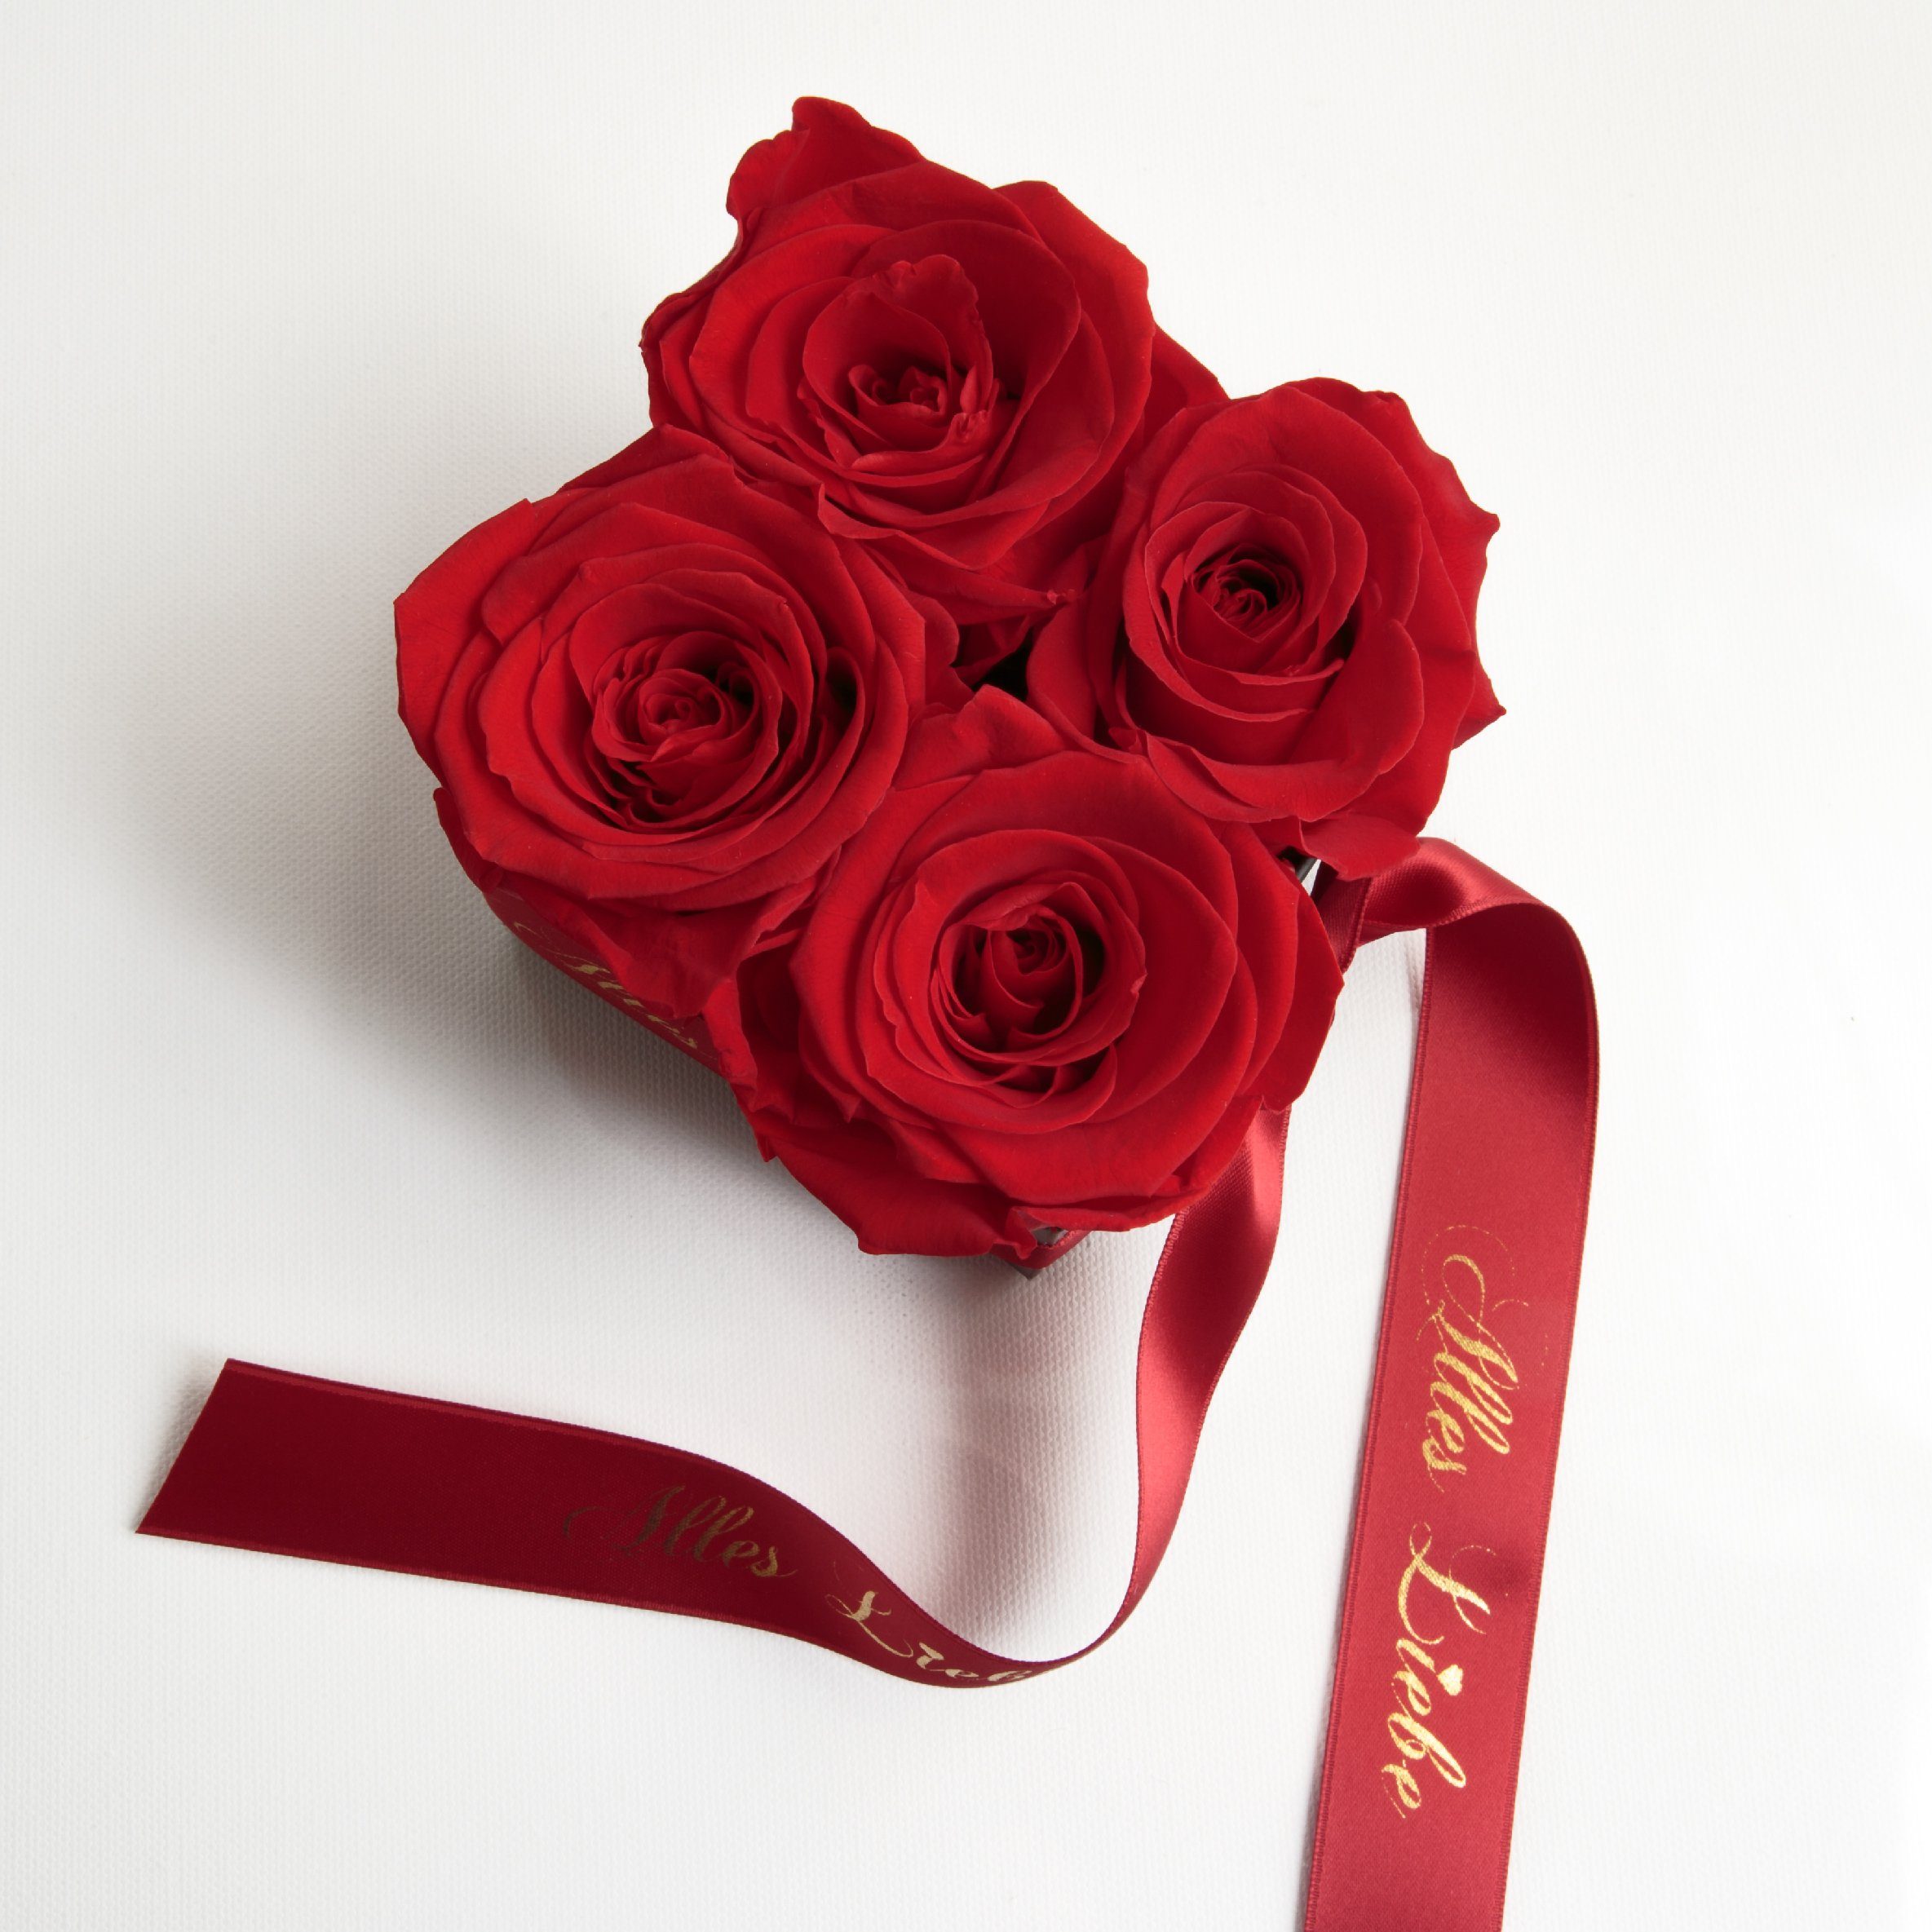 Kunstblumenstrauß Alles Liebe Blumen Infinity 8,5 Rot Rose, Rosen Geschenk cm, konservierte Höhe ROSEMARIE Muttertag echte Heidelberg, Rosenbox SCHULZ